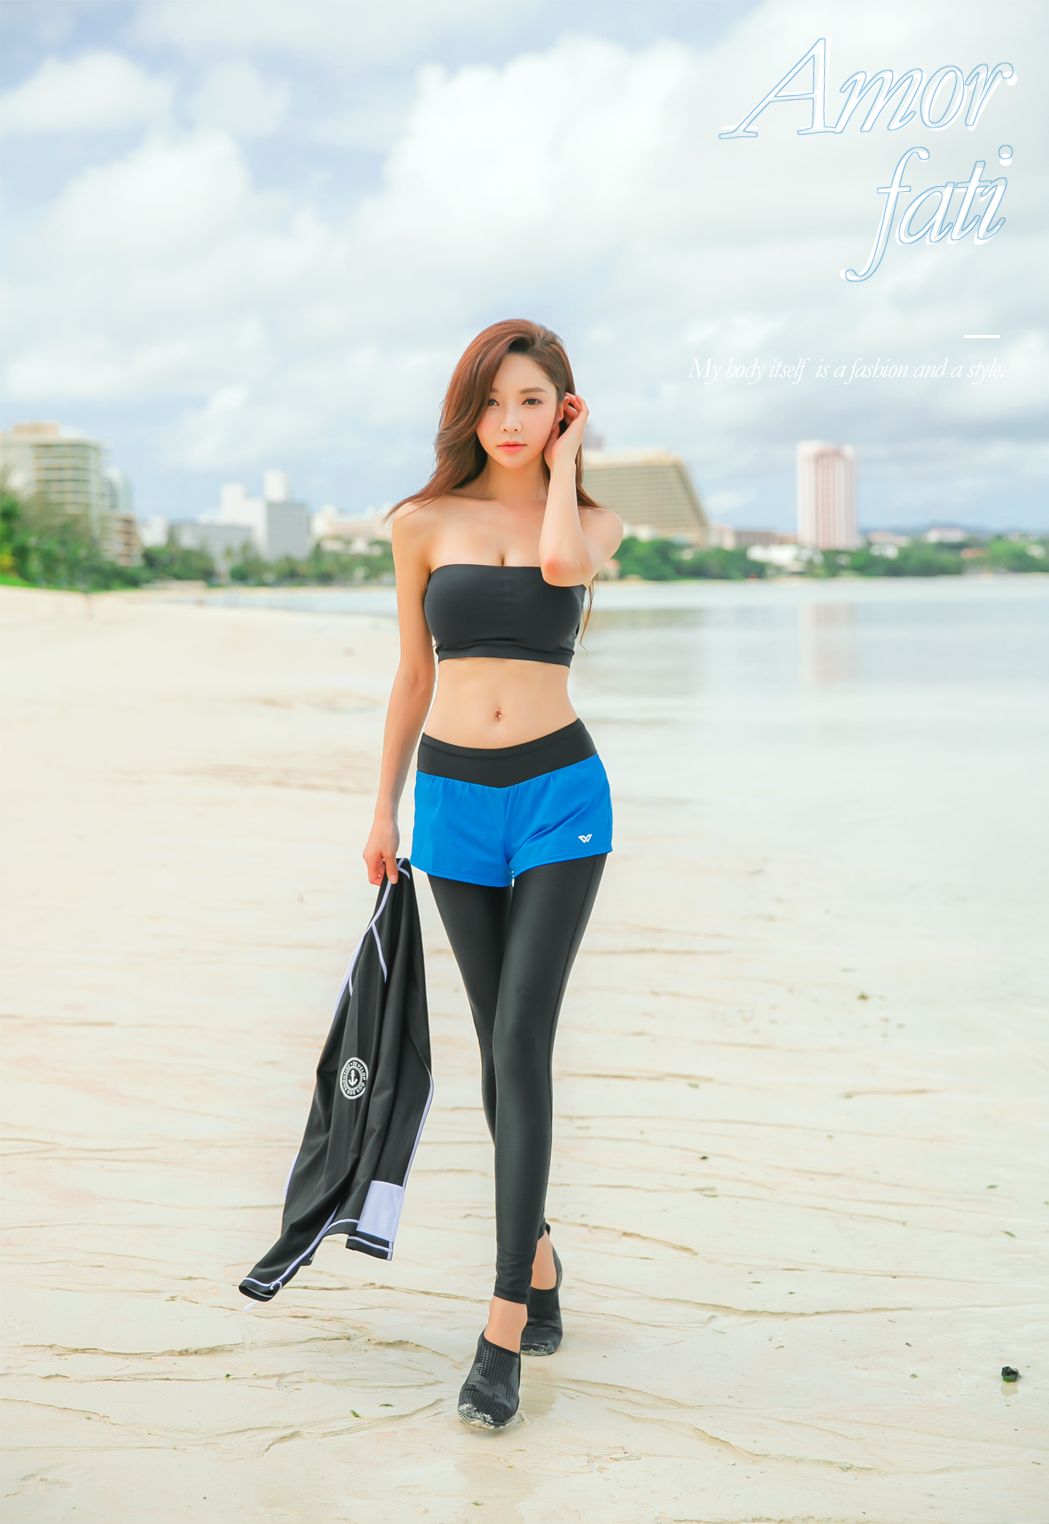 极品完美身材美女模特儿朴秀妍沙滩比基尼系列高挑性感写真照片图集套图10